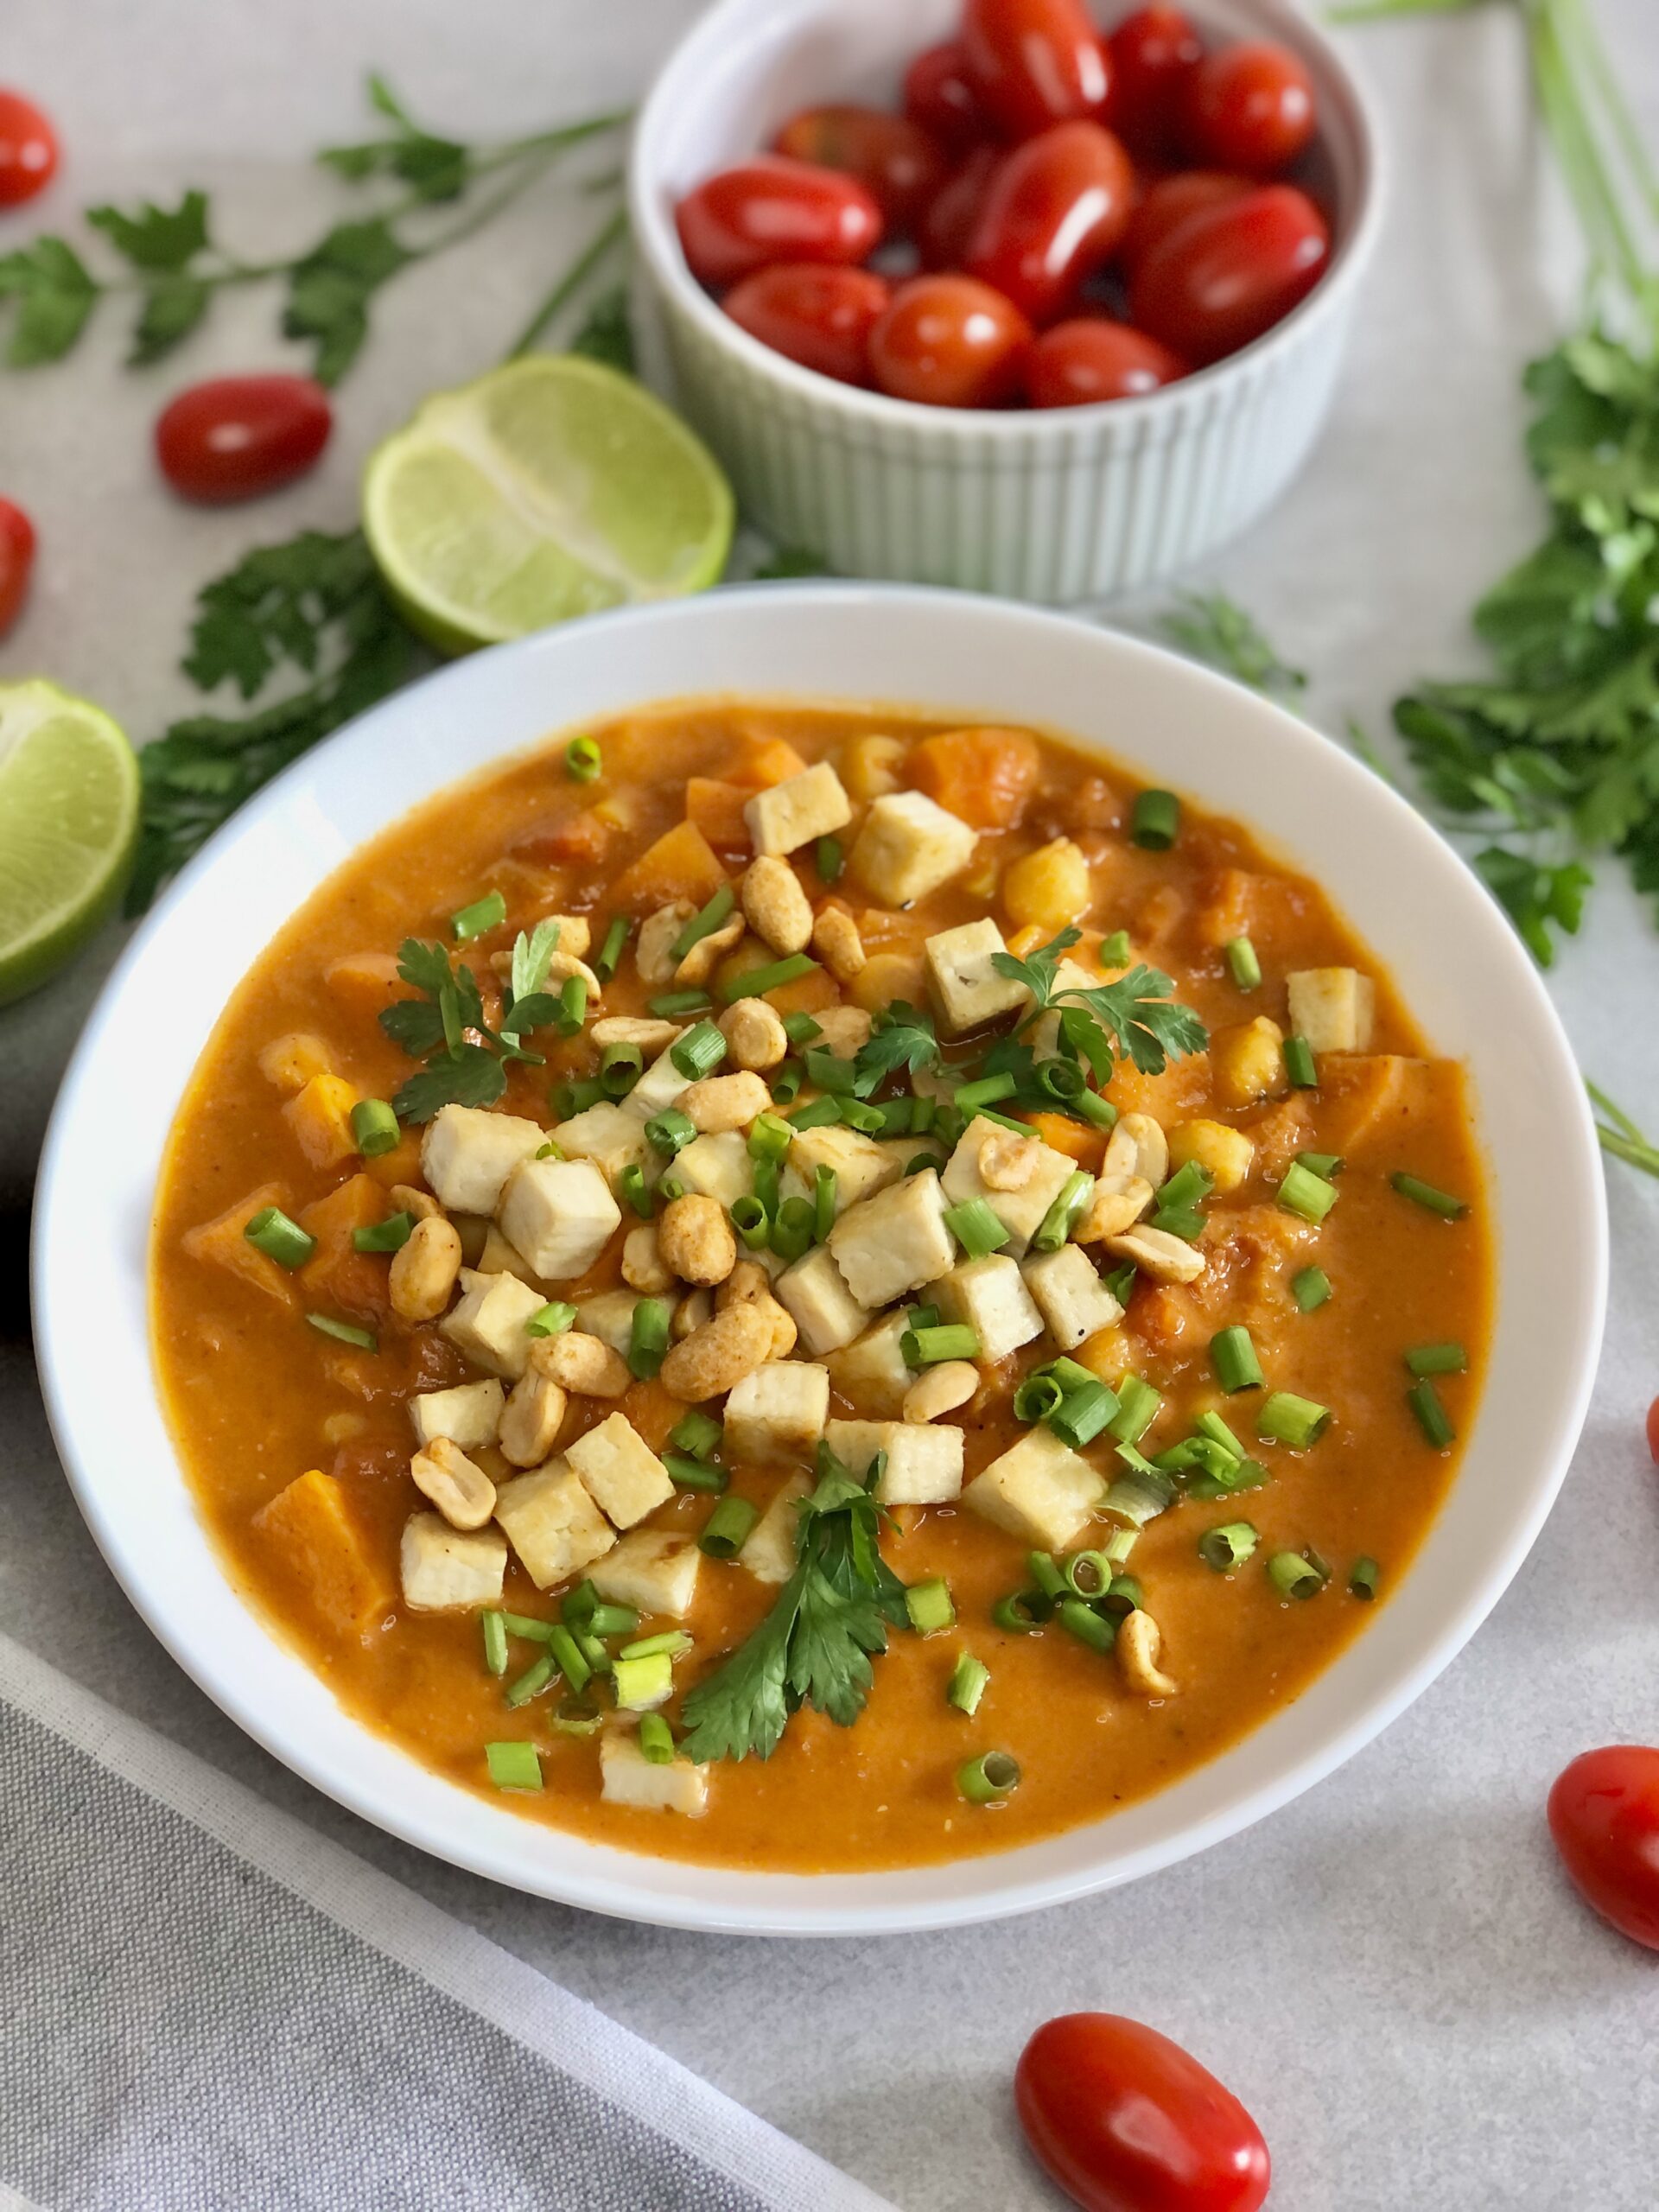 ekspresowa zupa curry z batatem ciecierzycą i tofu